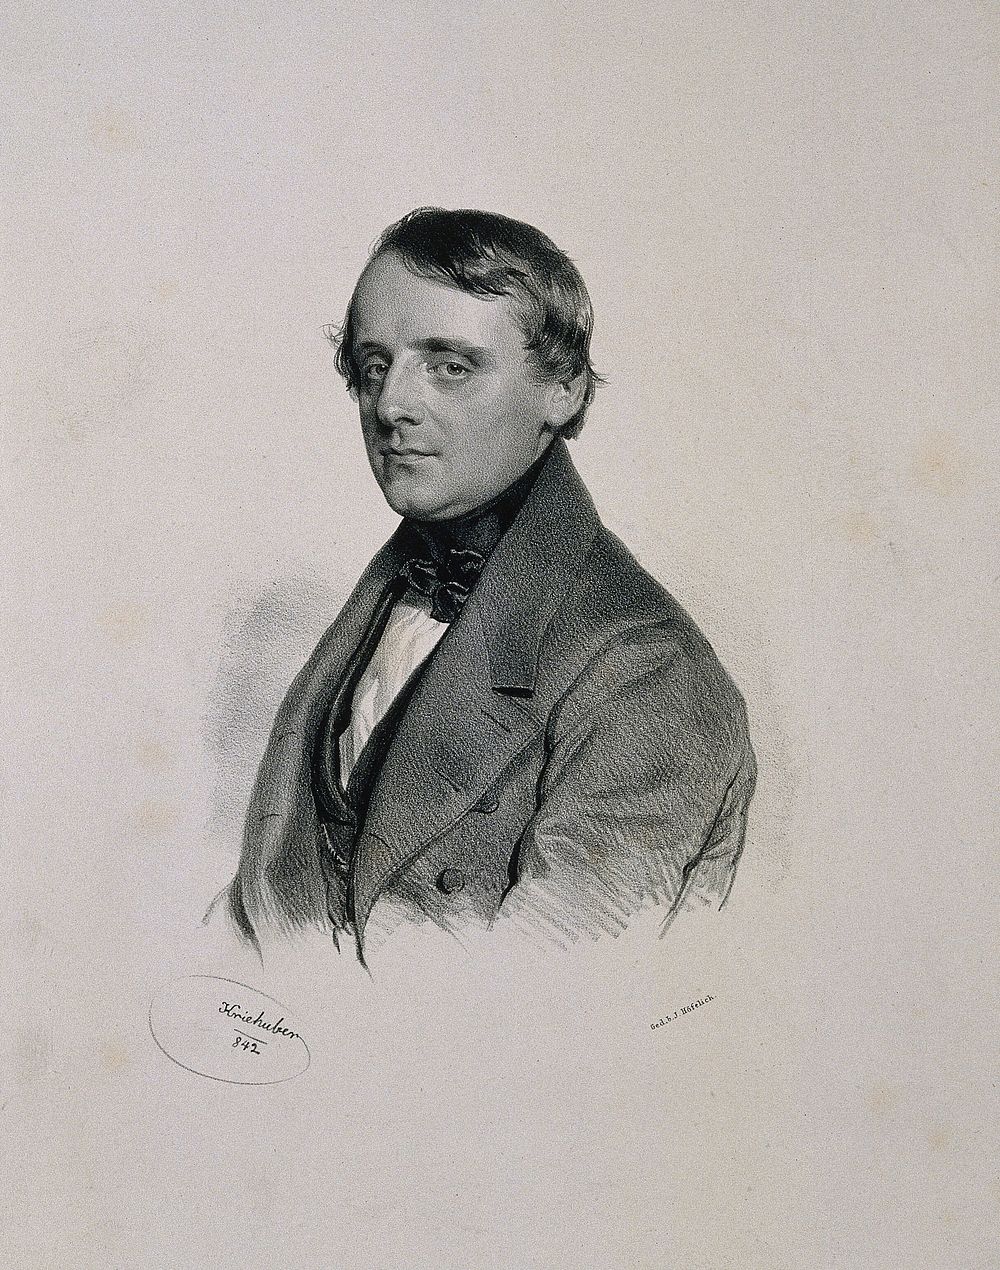 August, Ritter von Schaeffer. Lithograph by J. Kriehuber, 1842.